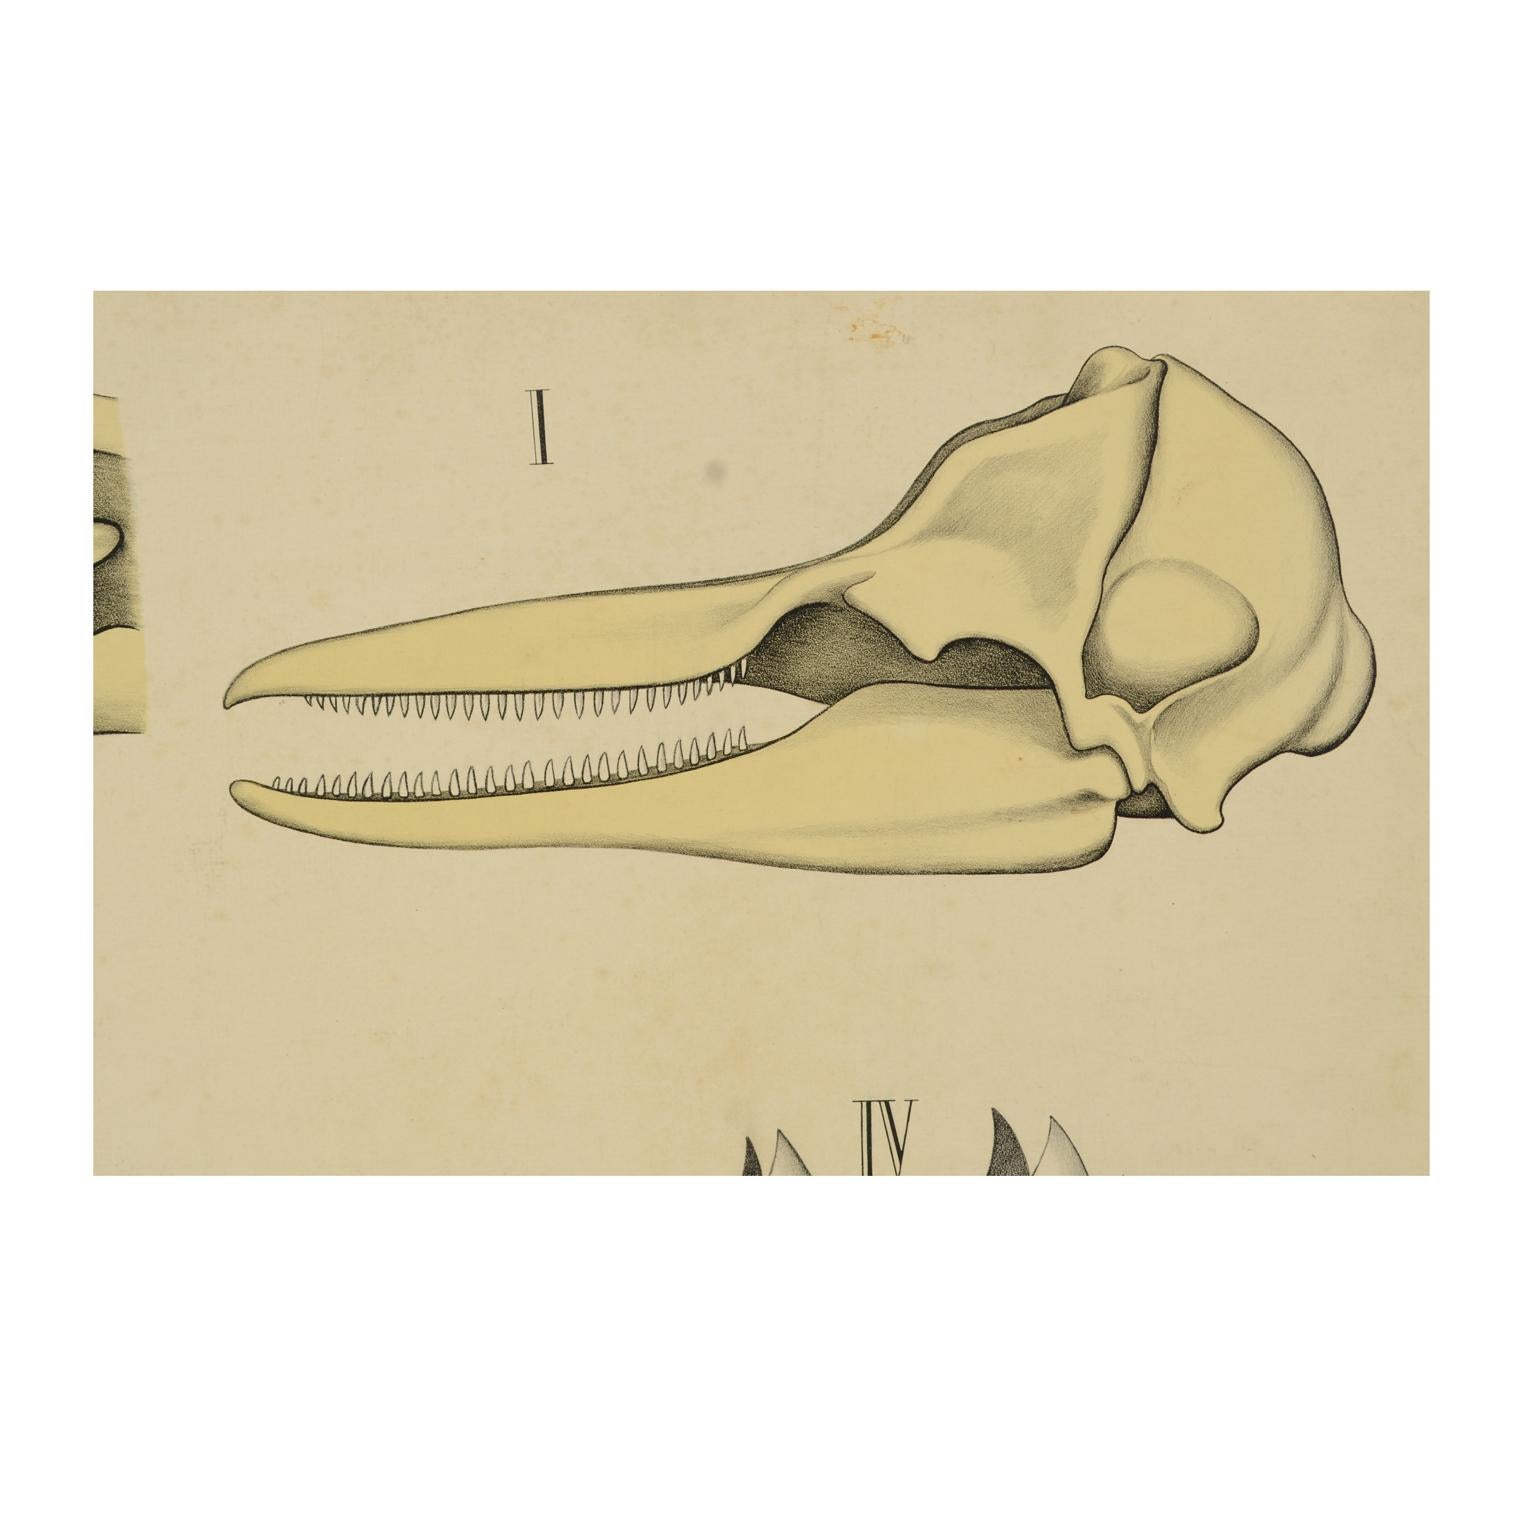 Zoologische Lehrtafel Nr. 15 Lithographie auf Karton aus dem Jahr 1912, die die Zähne einiger Tiere zeigt. Dybdhals Zoologiske Plancher P.M.Bye & Co Oslo. Hergestellt von H Aschehoug & Co. Guter Zustand. Maße: 74,3 x 60 cm - Zoll 29,2x23,5.

H.